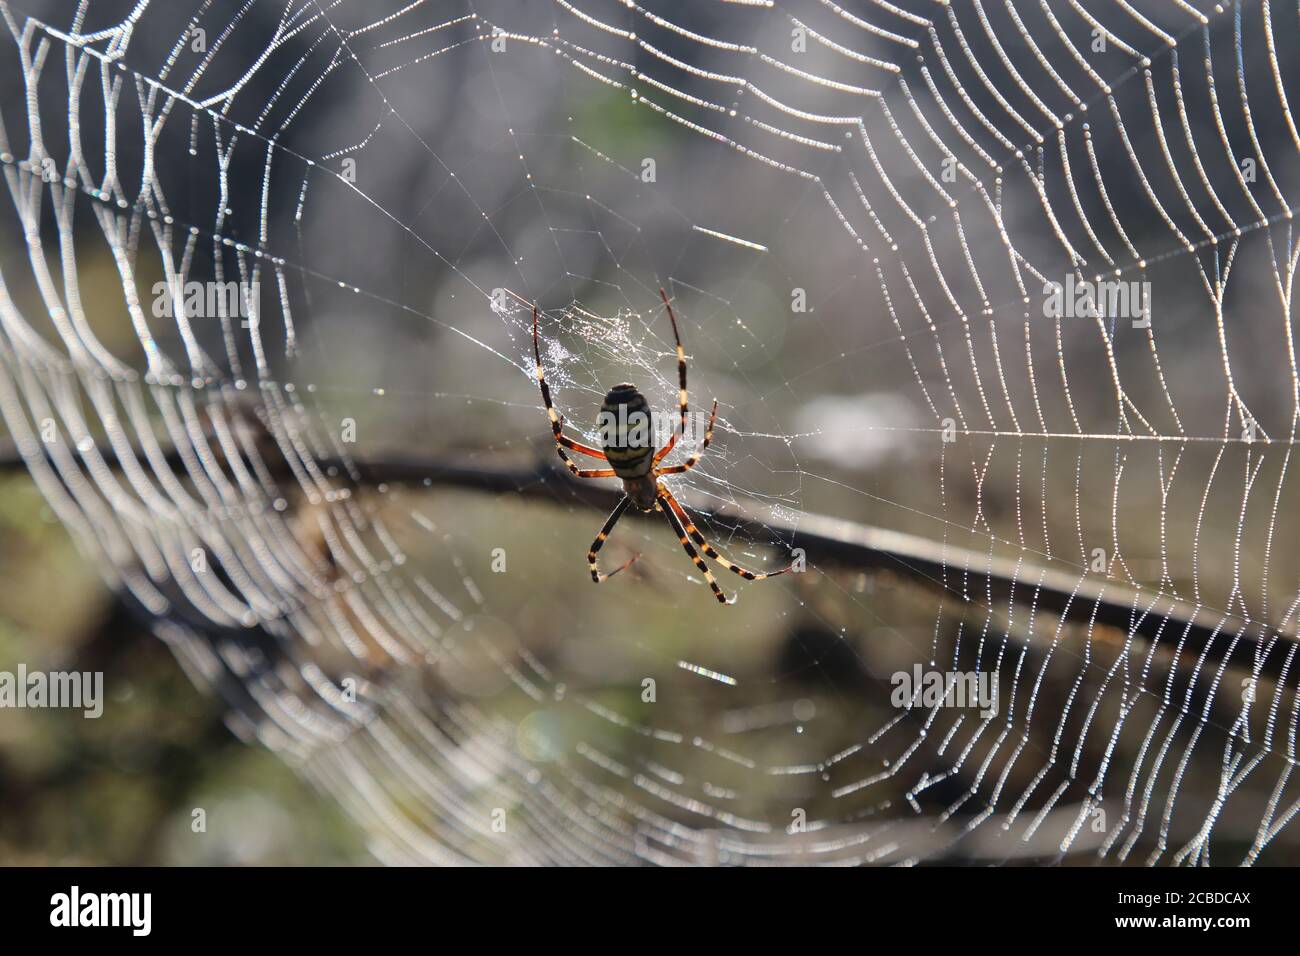 Gelb-schwarze Spinne in ihrem Spinnennetz - Argiope bruennichi Stockfoto